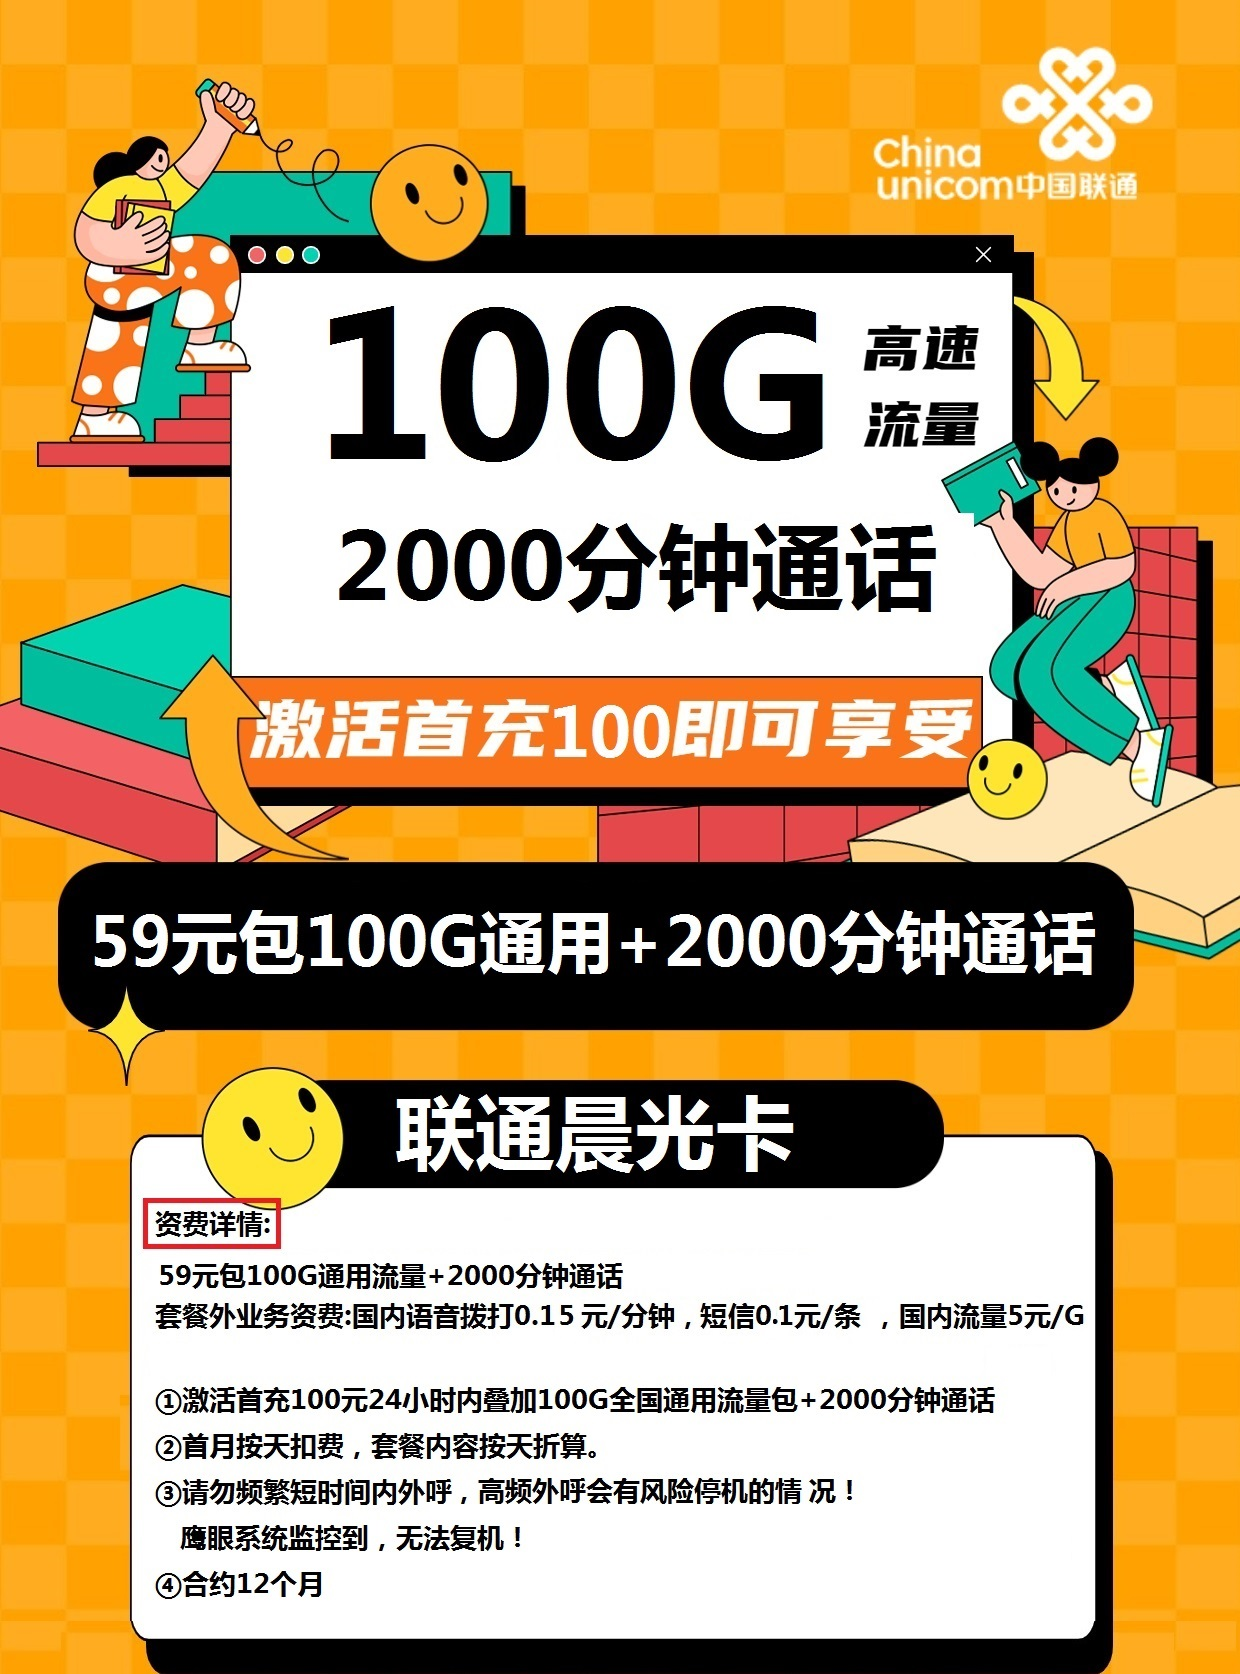 联通晨光卡59元100G通用+2000分钟通话